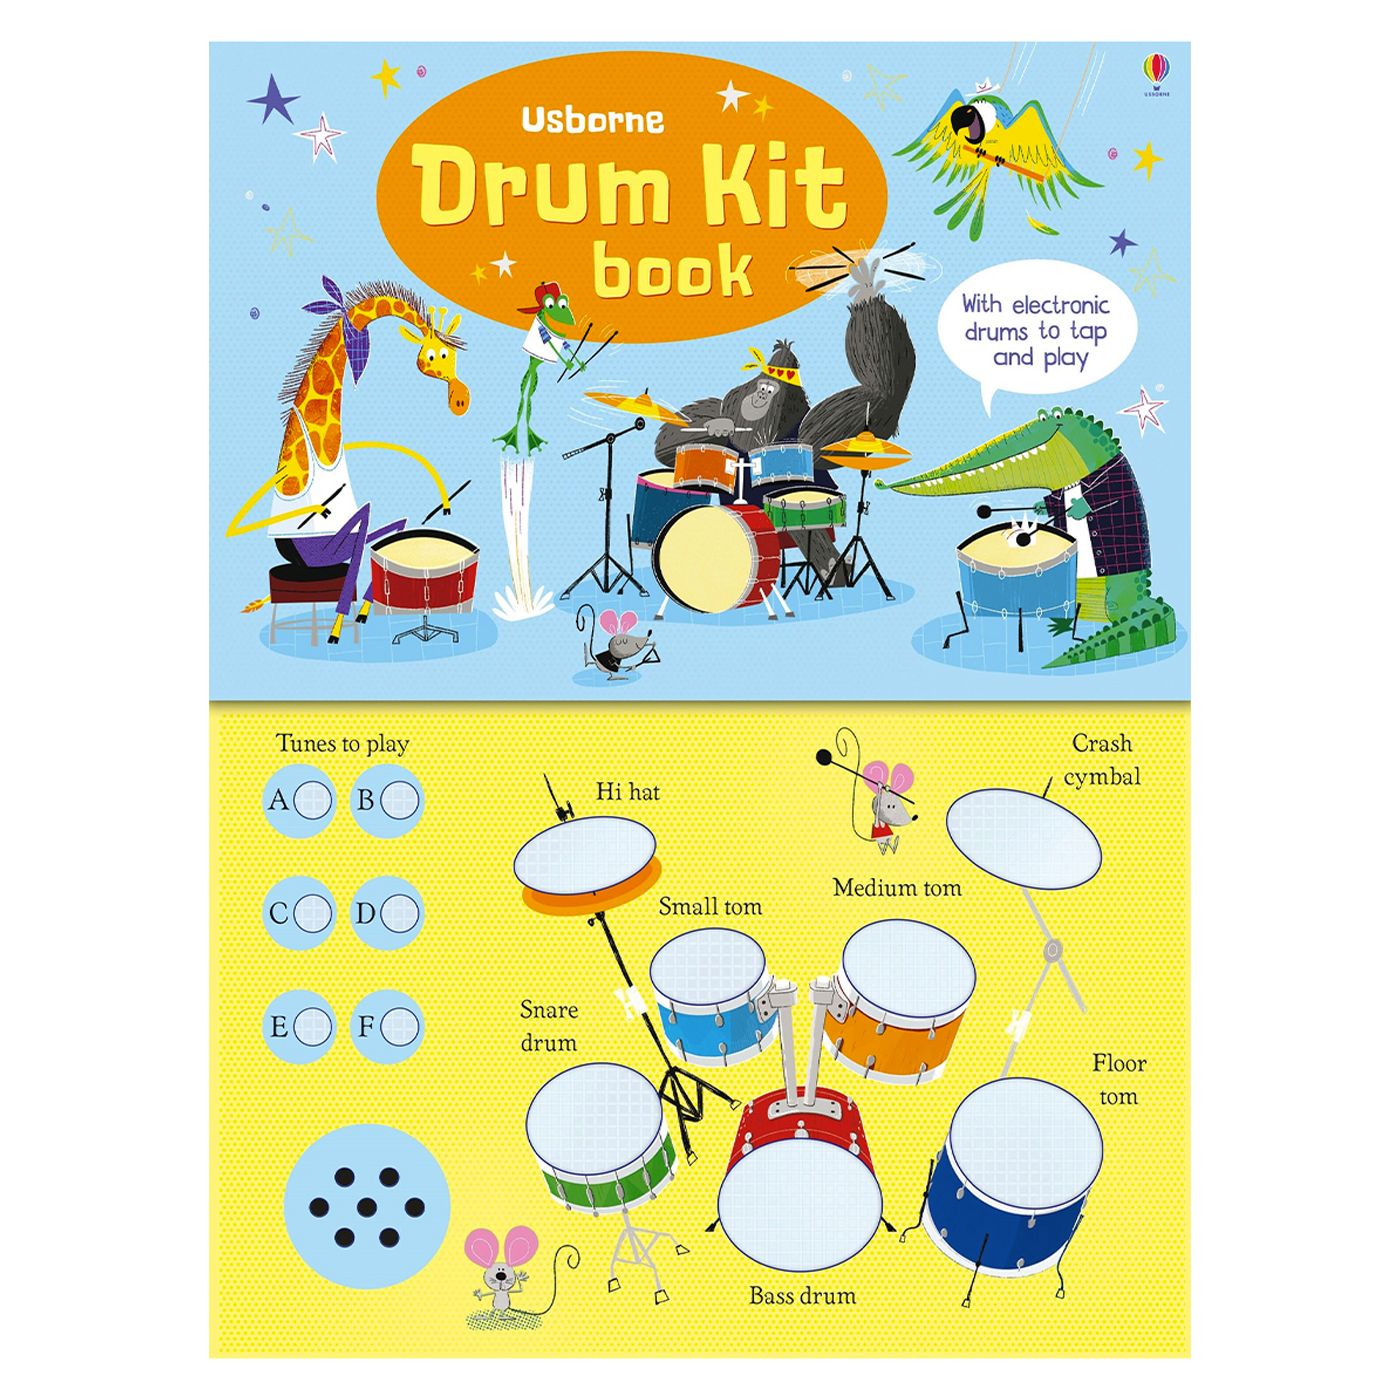  Drum Kit Book